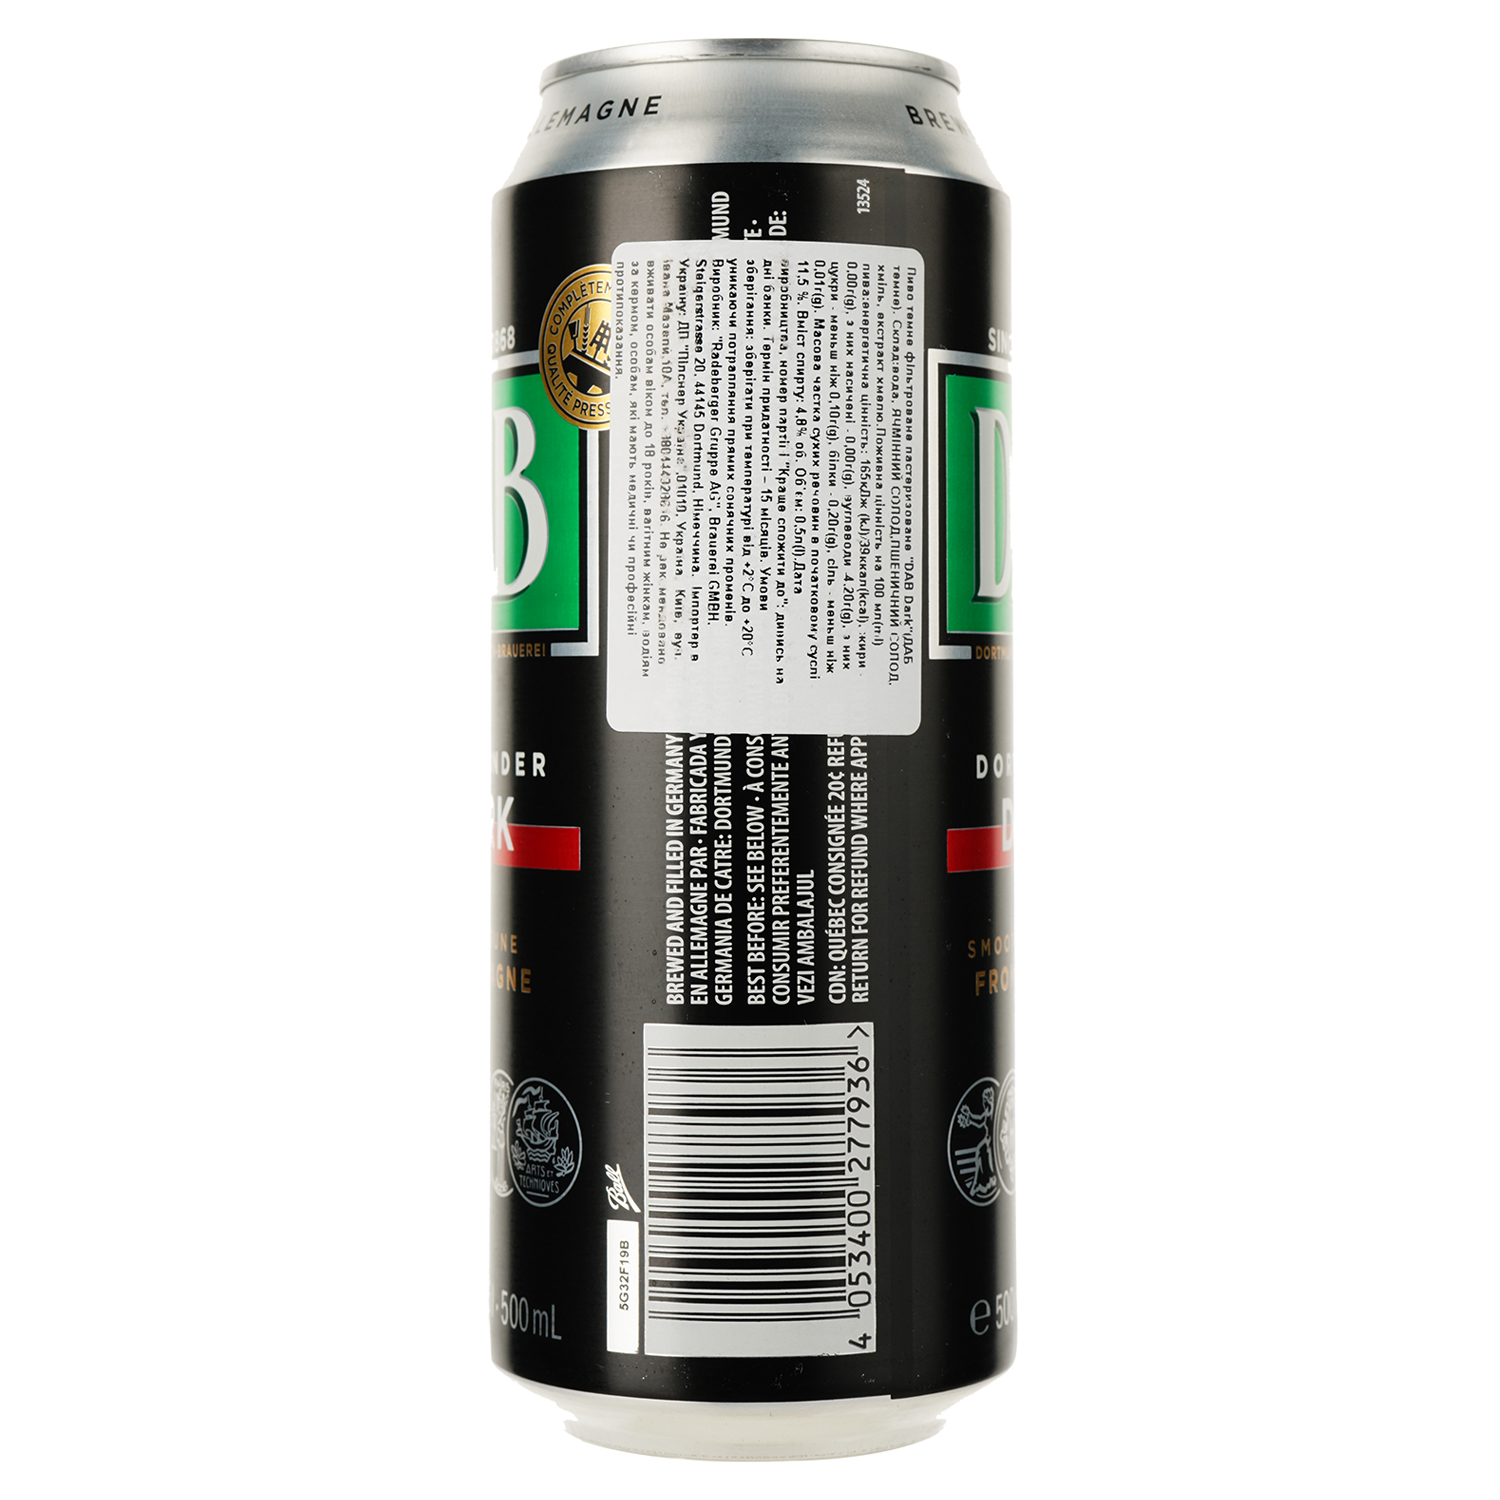 Пиво DAB Dark, темное, ж/б, 4,8%, 0,5 л - фото 2